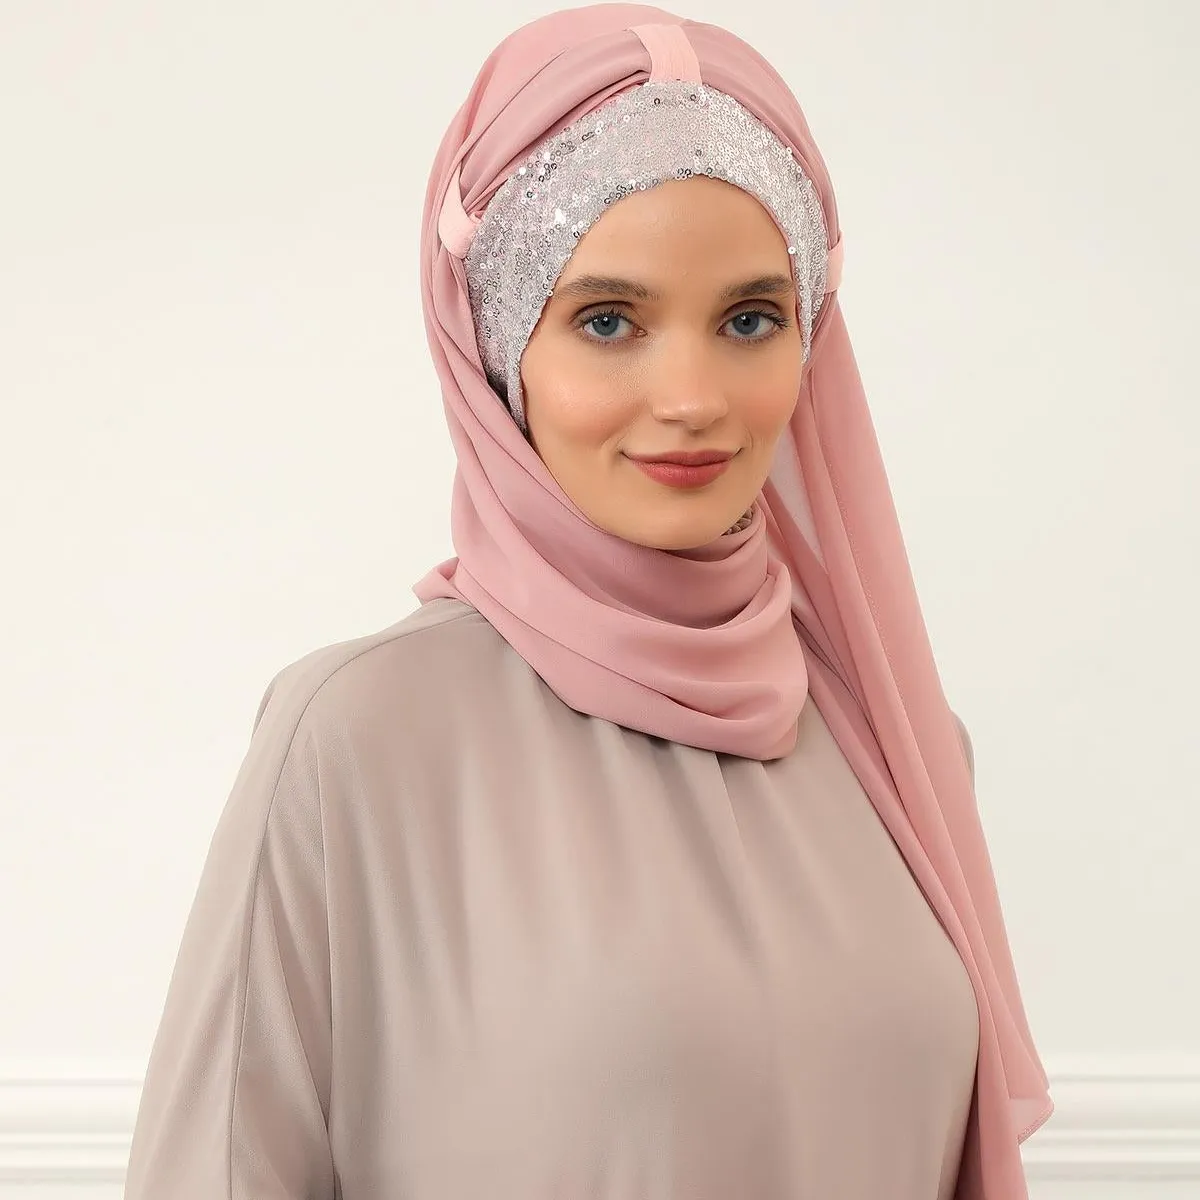 חדש שיפון צעיף שיפון אלגנטי מוכן ללבוש ראש הדשא הצעיף חיג 'אב המוסלמי dubai צעיף ראש צעיף